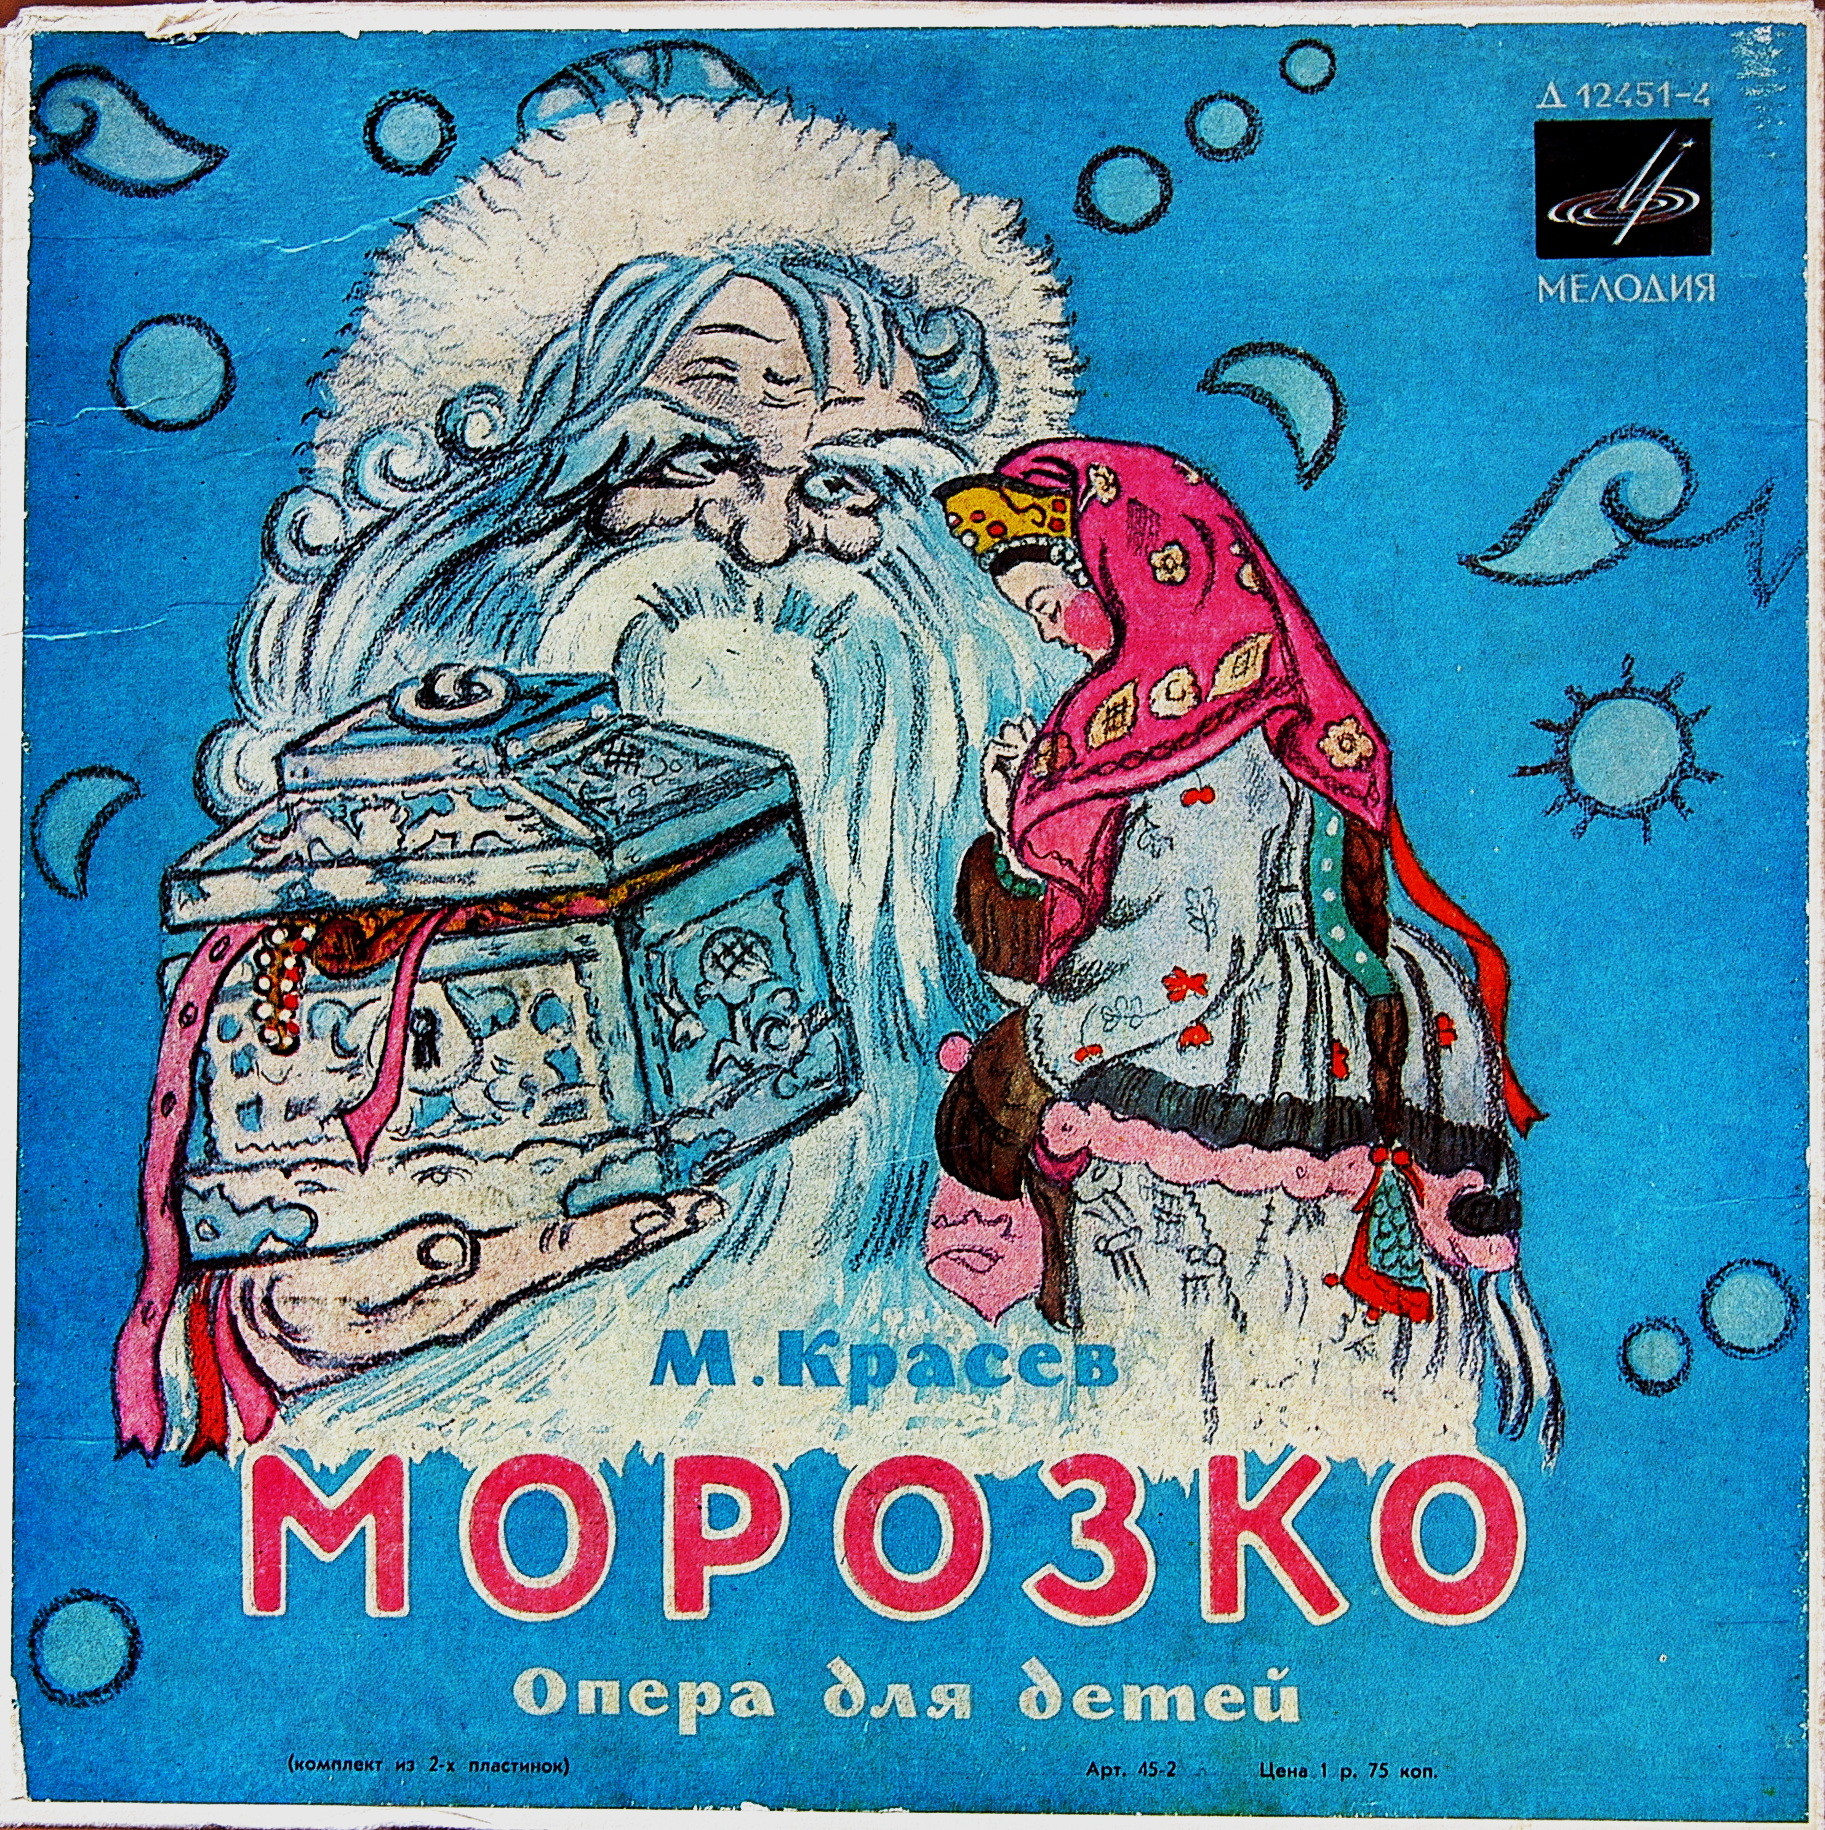 М. КРАСЕВ (1897-1954) "Морозко": детская опера